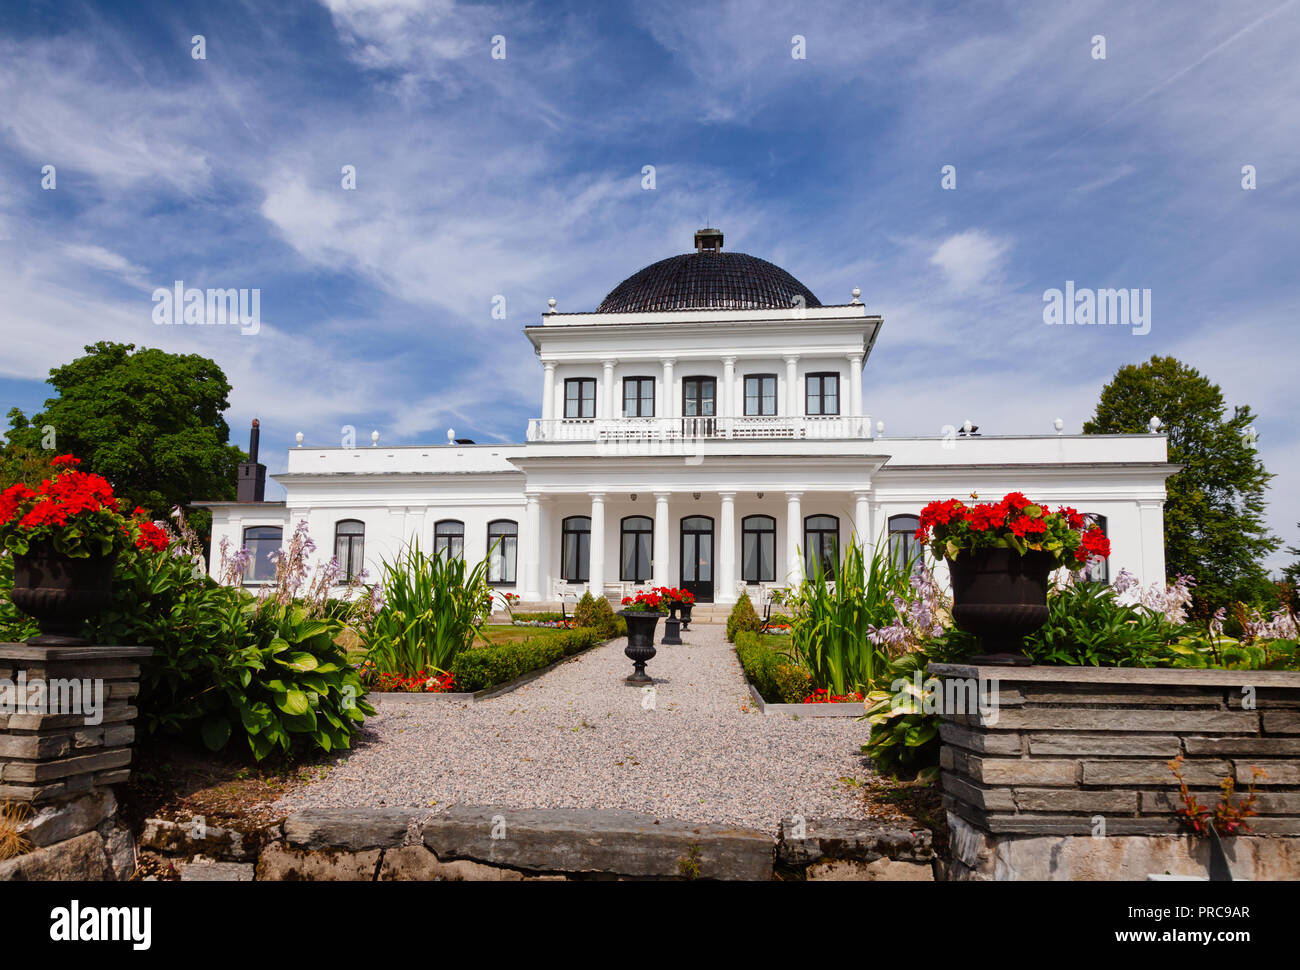 In stile impero Ulefos Manor House (Hovedgaard), una popolare attrazione turistica nella contea di Telemark, Norvegia Foto Stock